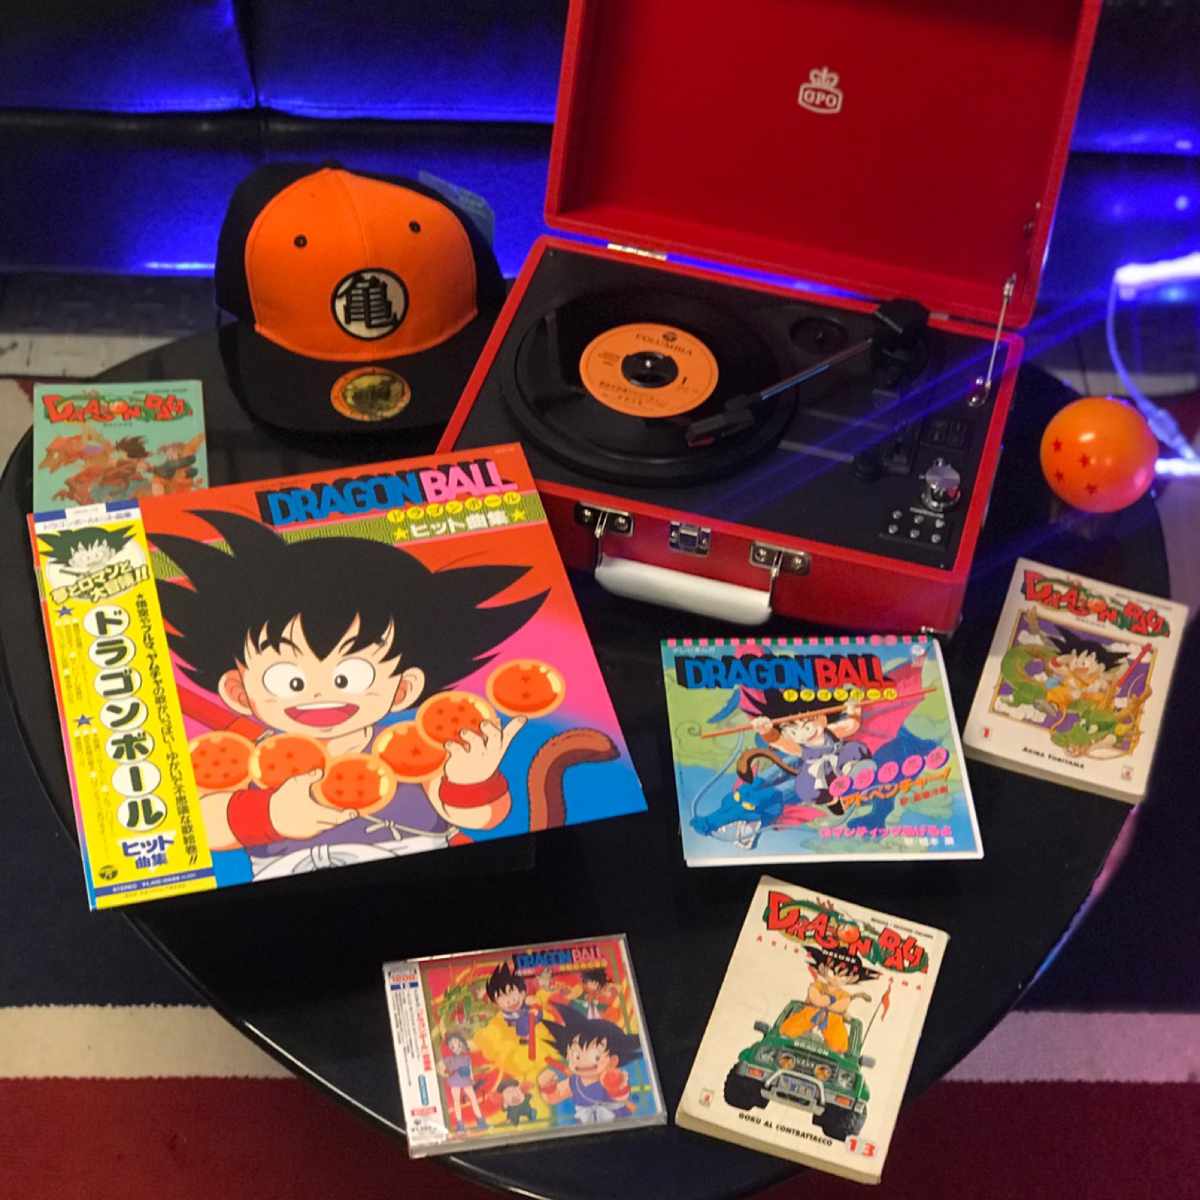 Dragon Ball edizione giapponese colonna sonora in formato cd - vinile 33-45 giri